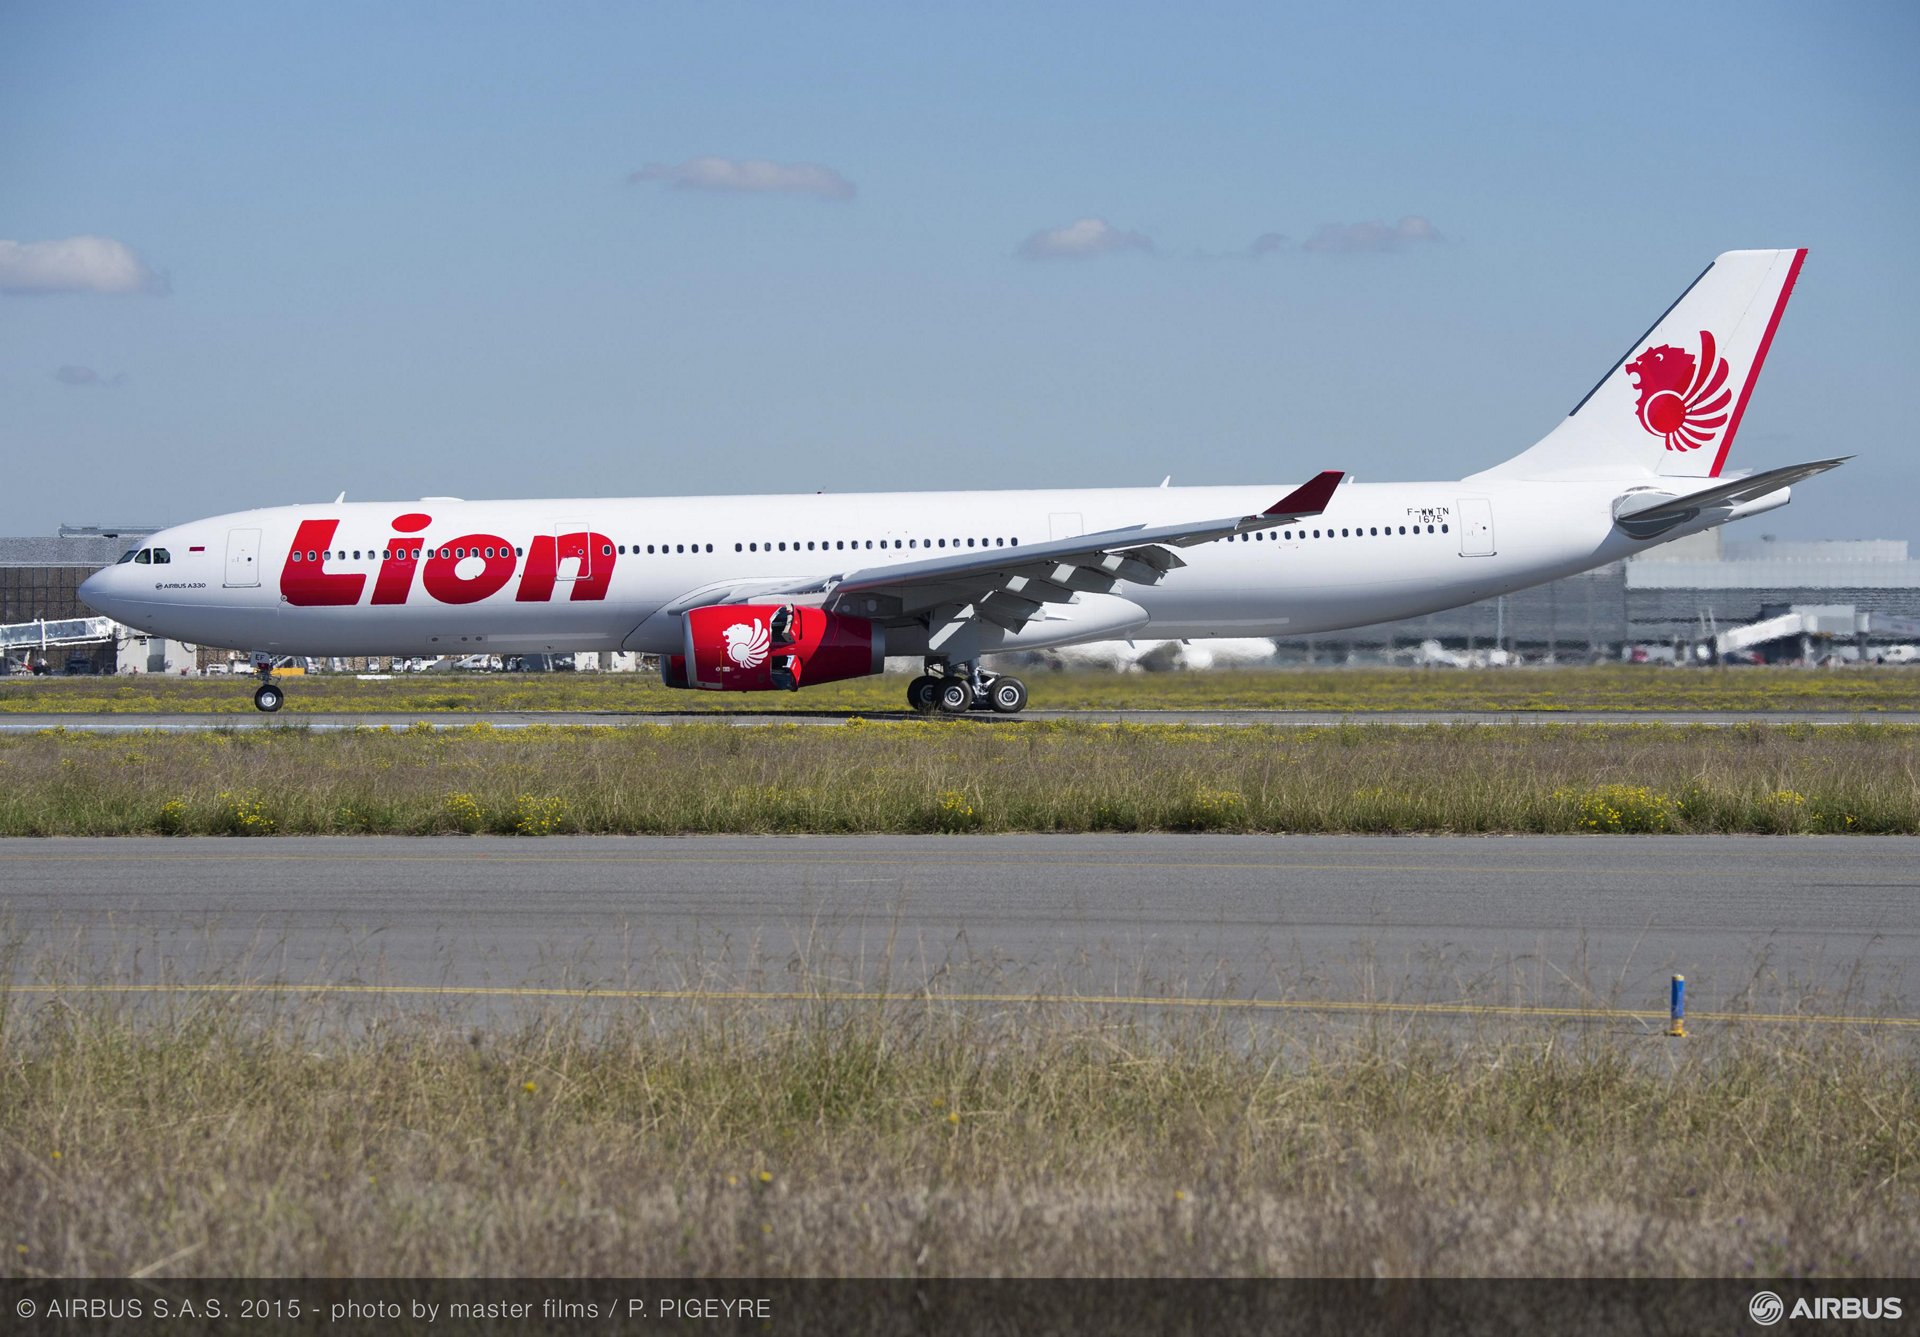 Lion Air Ubernimmt Ihren Ersten Airbus A330 300 Commercial